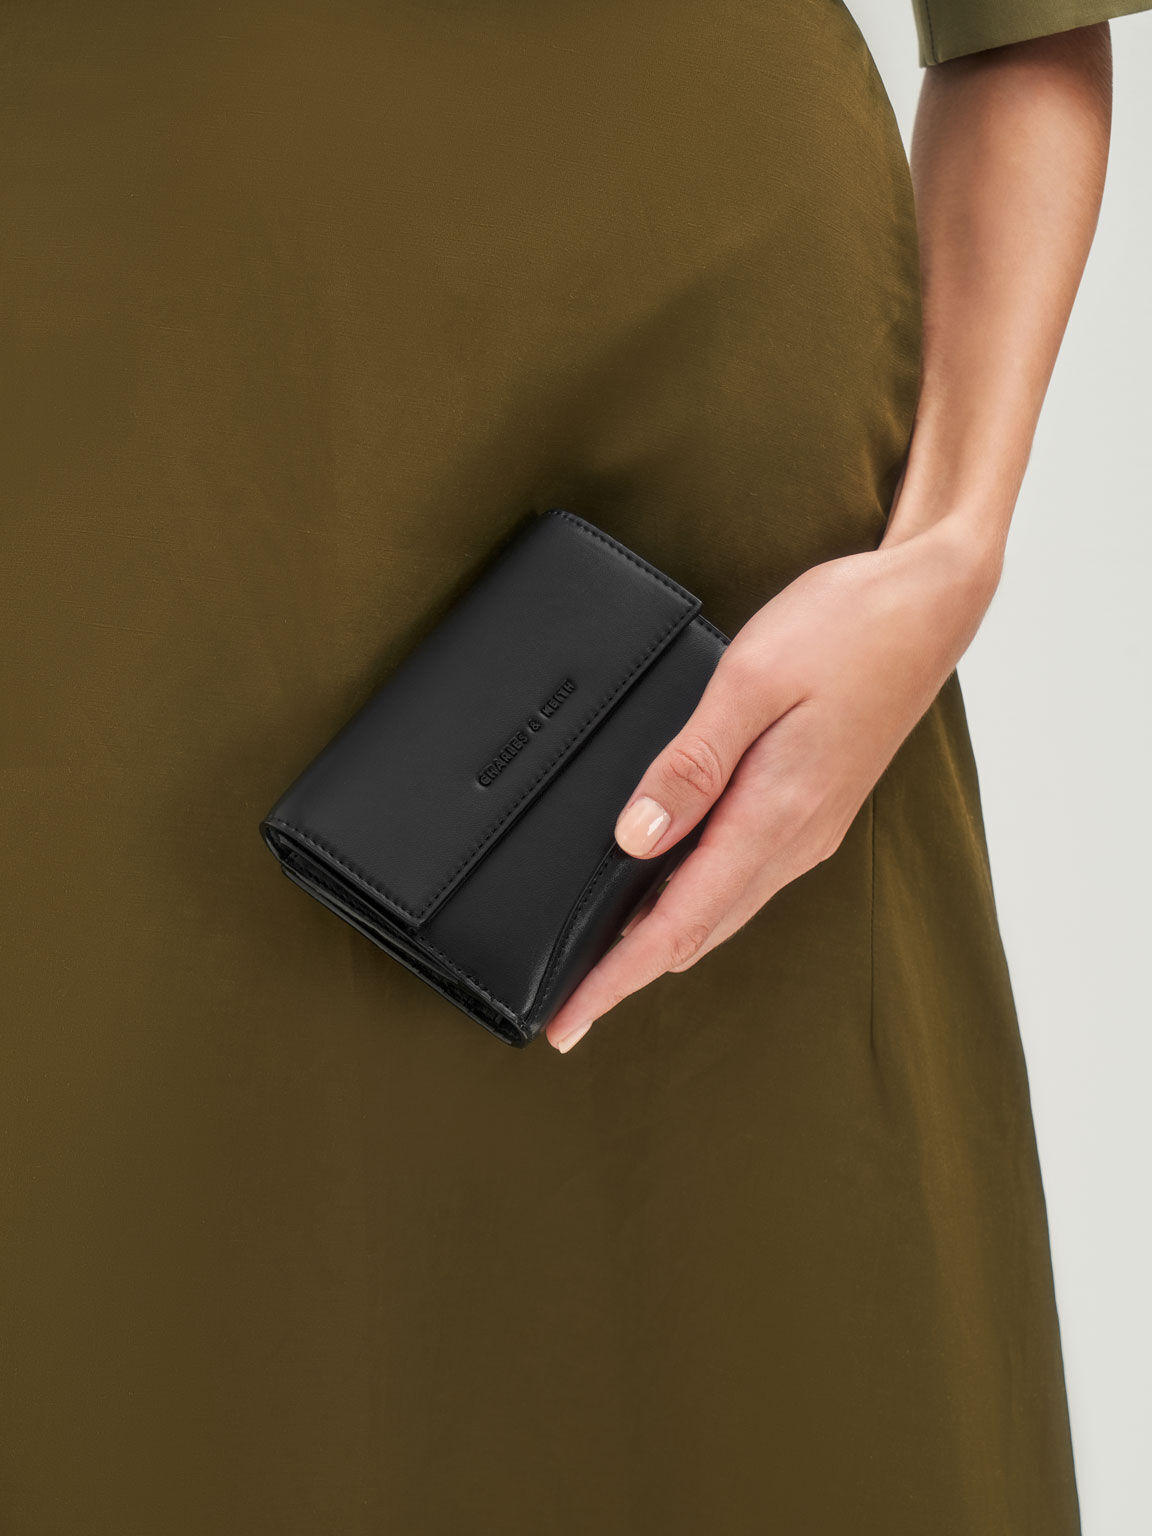 Snap Button Mini Short Wallet, Black, hi-res